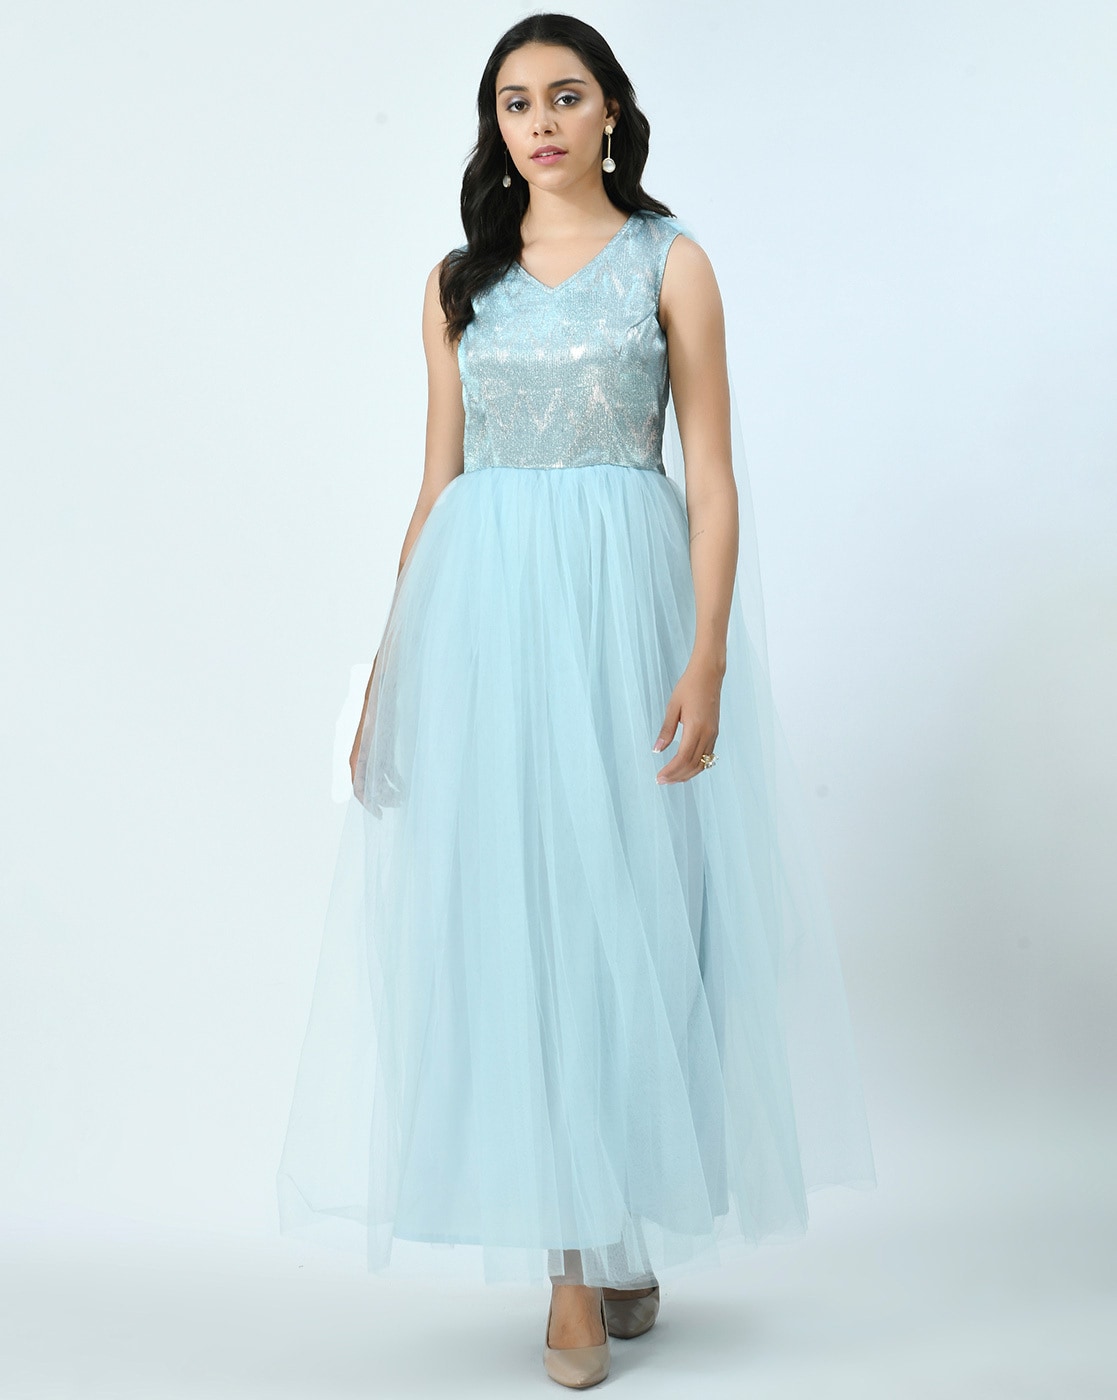 Vintage Light Blue Little Girls Princess Dress Ball Gowns KD1002 –  Viniodress